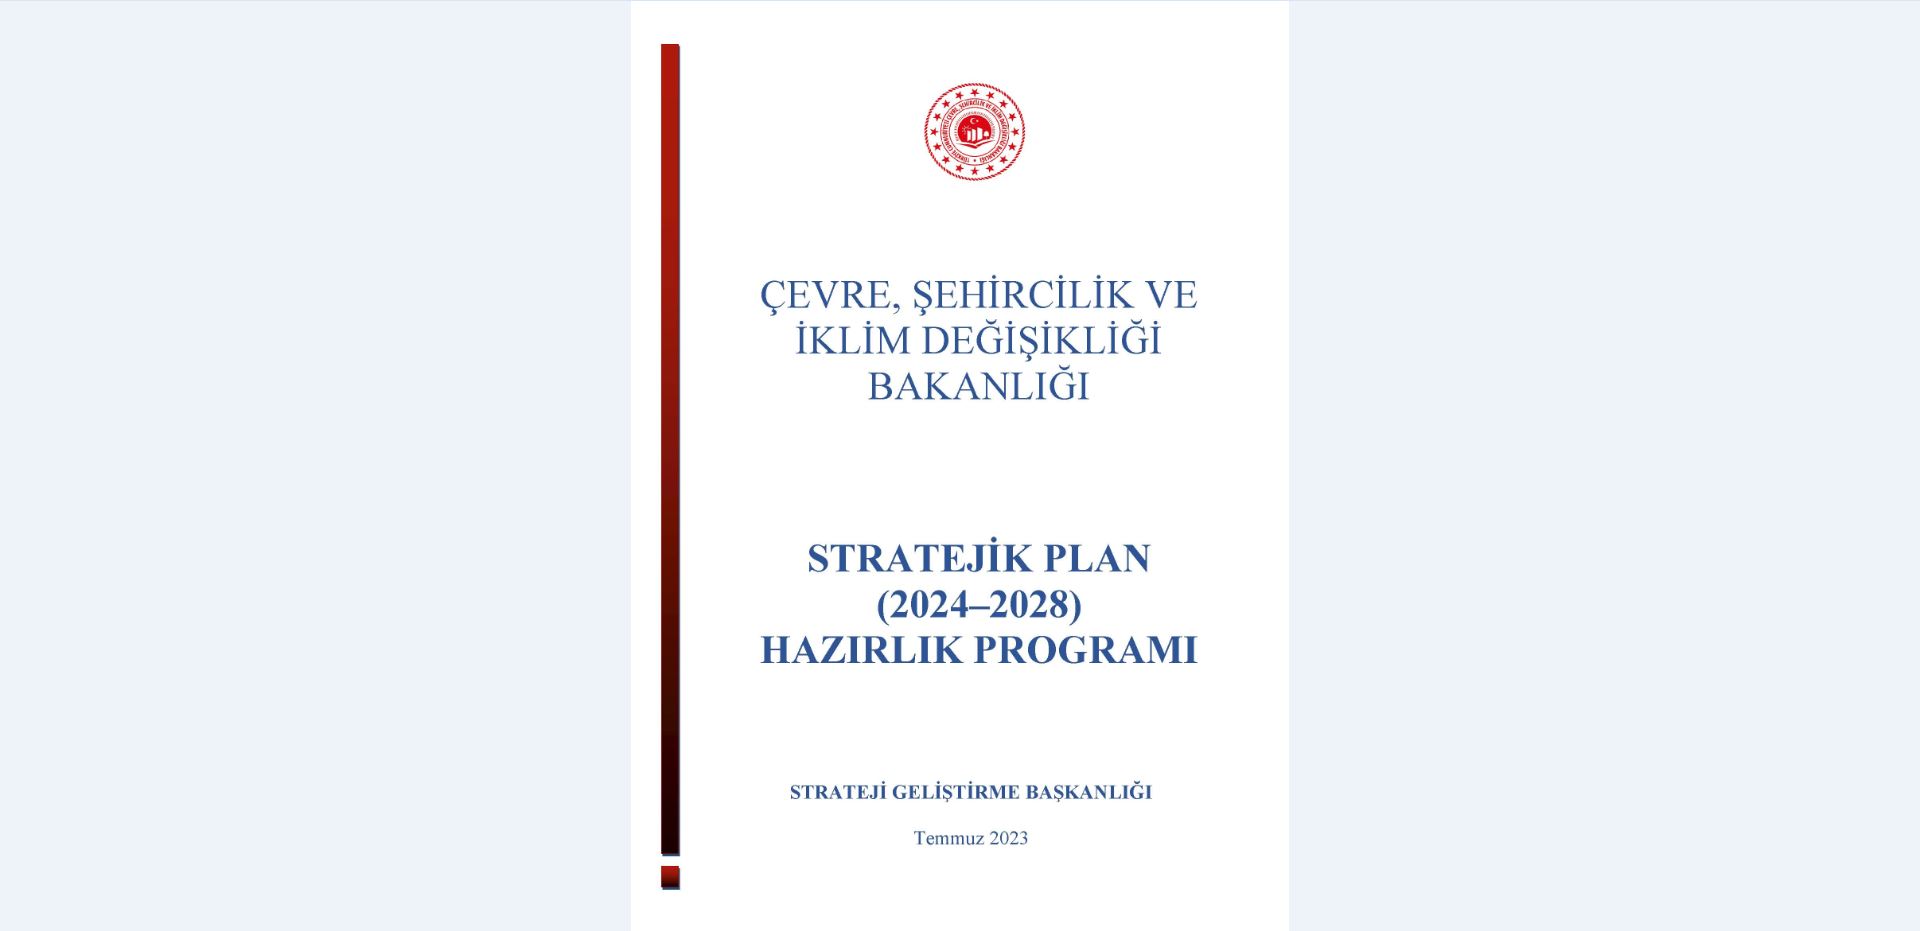 Çevre, Şehircilik ve İklim Değişikliği Bakanlığı 2024-2028 Stratejik Planı Hazırlık Programı